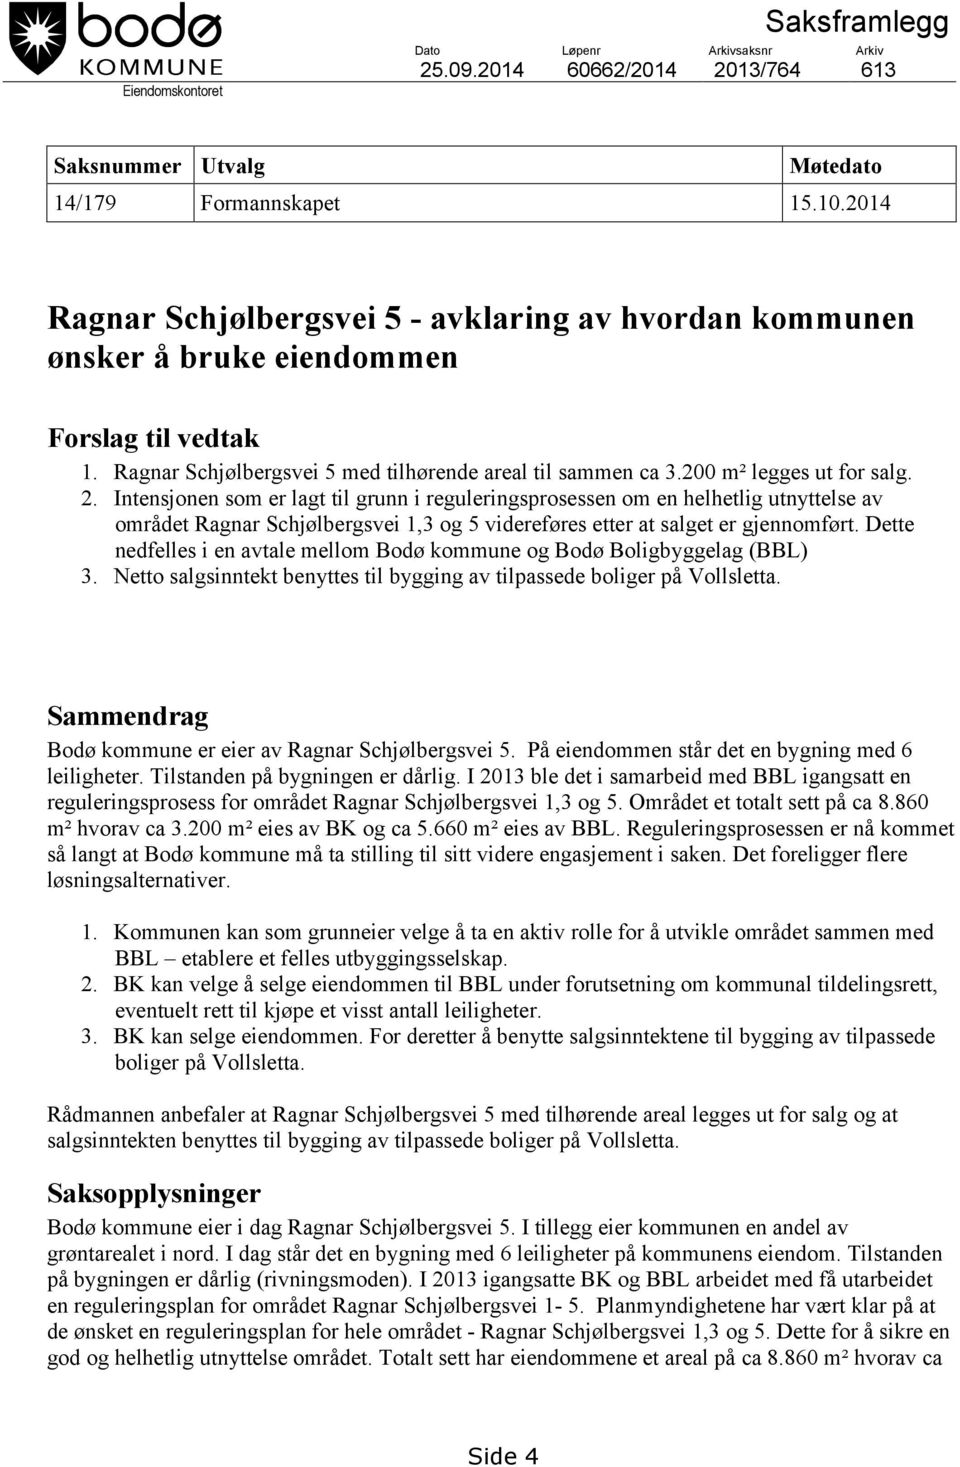 Intensjonen som er lagt til grunn i reguleringsprosessen om en helhetlig utnyttelse av området Ragnar Schjølbergsvei 1,3 og 5 videreføres etter at salget er gjennomført.